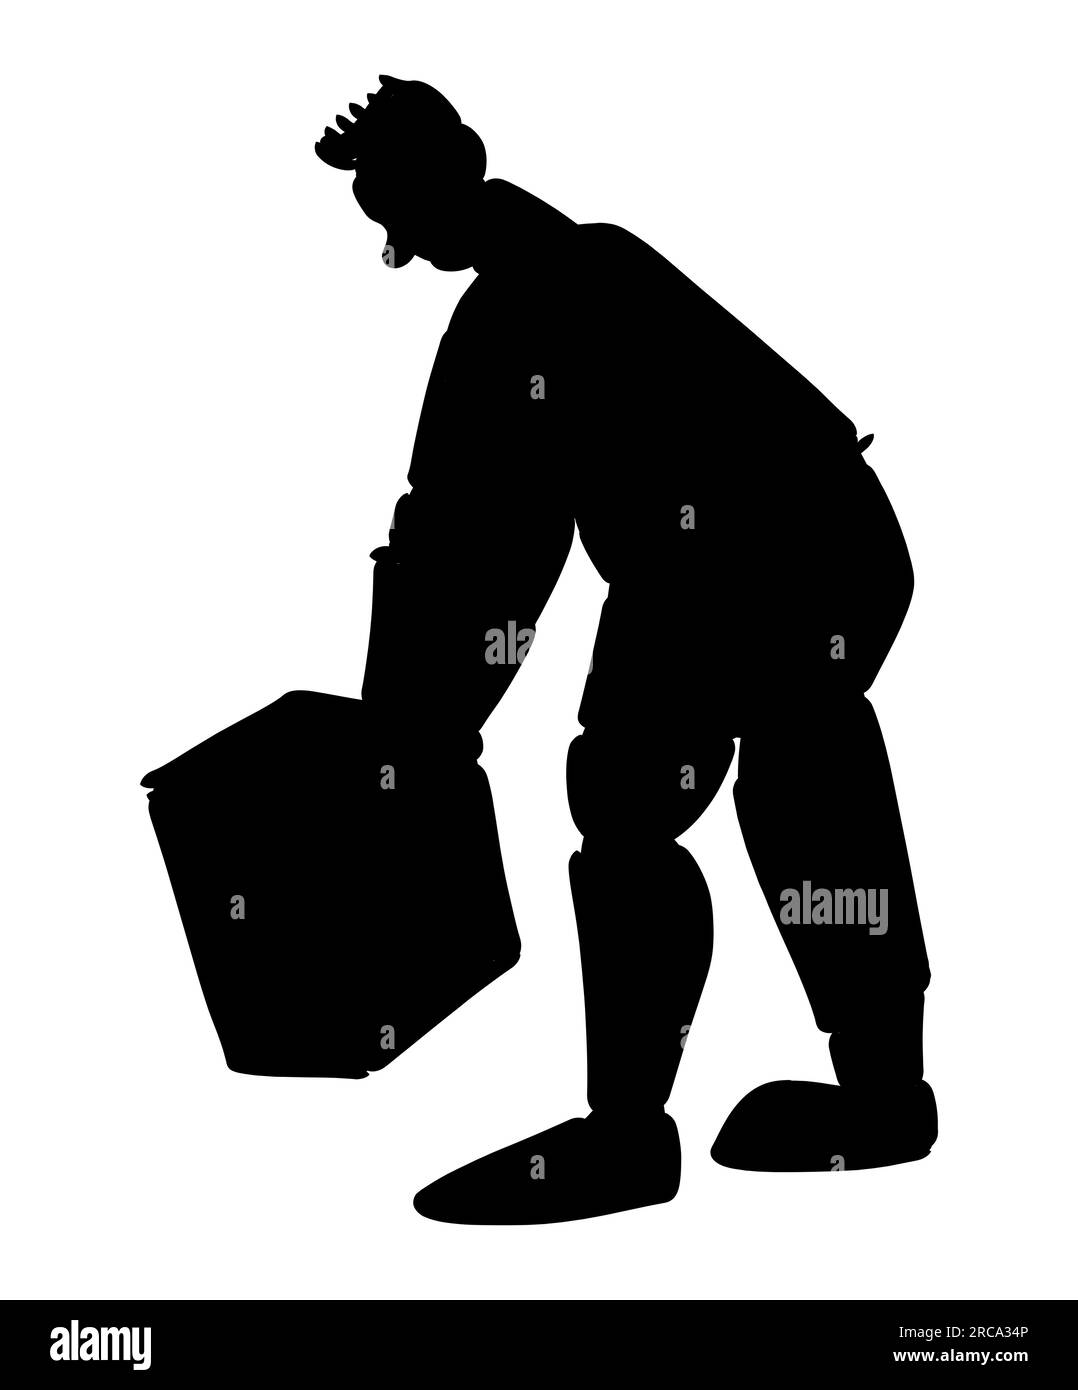 Silhouette noire d'un employé de poste distribuant des paquets. Livraison post-service. Transport de boîtes et colis, vecteur isolé sur blanc Illustration de Vecteur